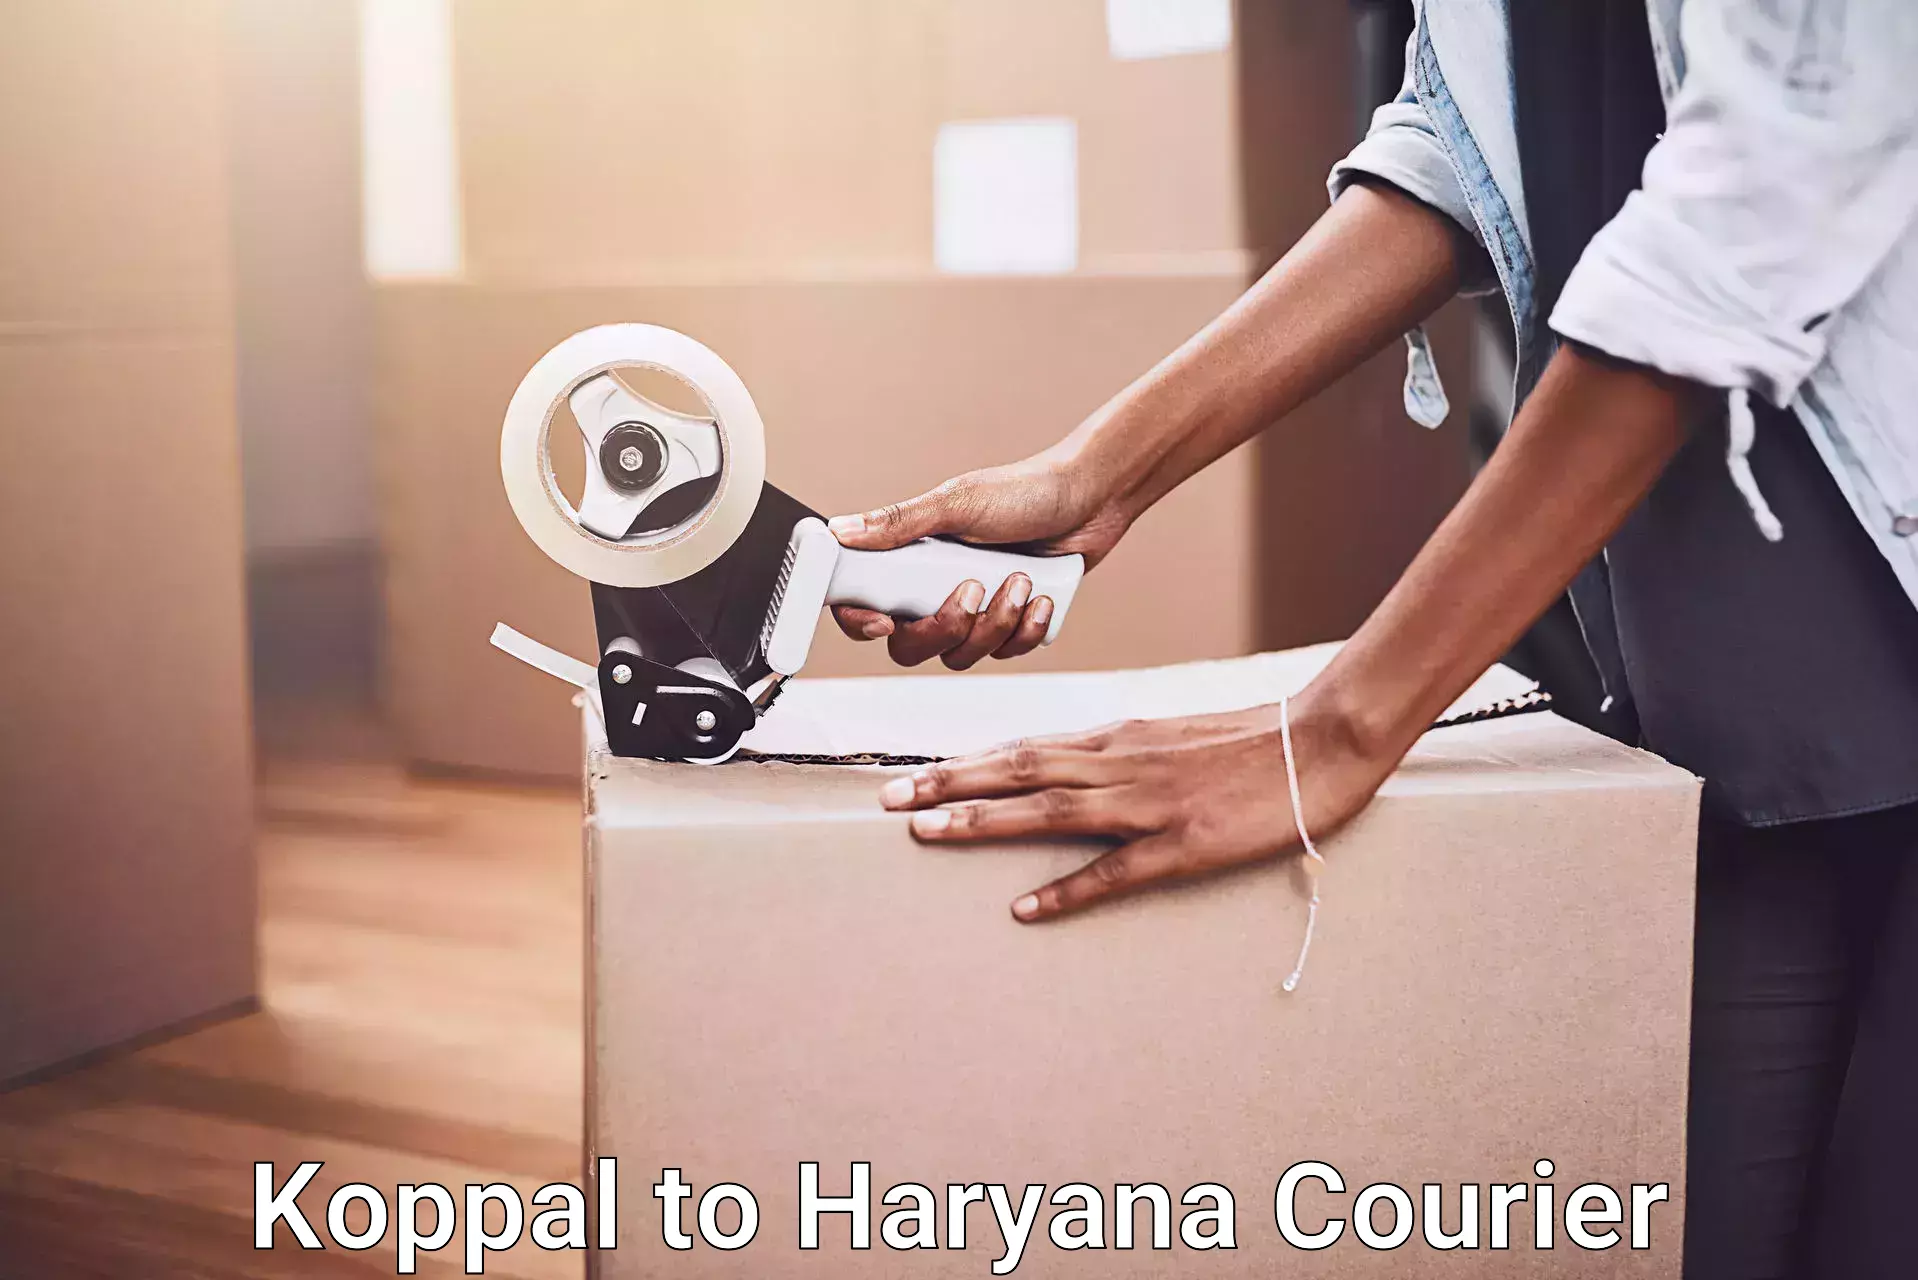 Professional furniture moving Koppal to Bilaspur Haryana